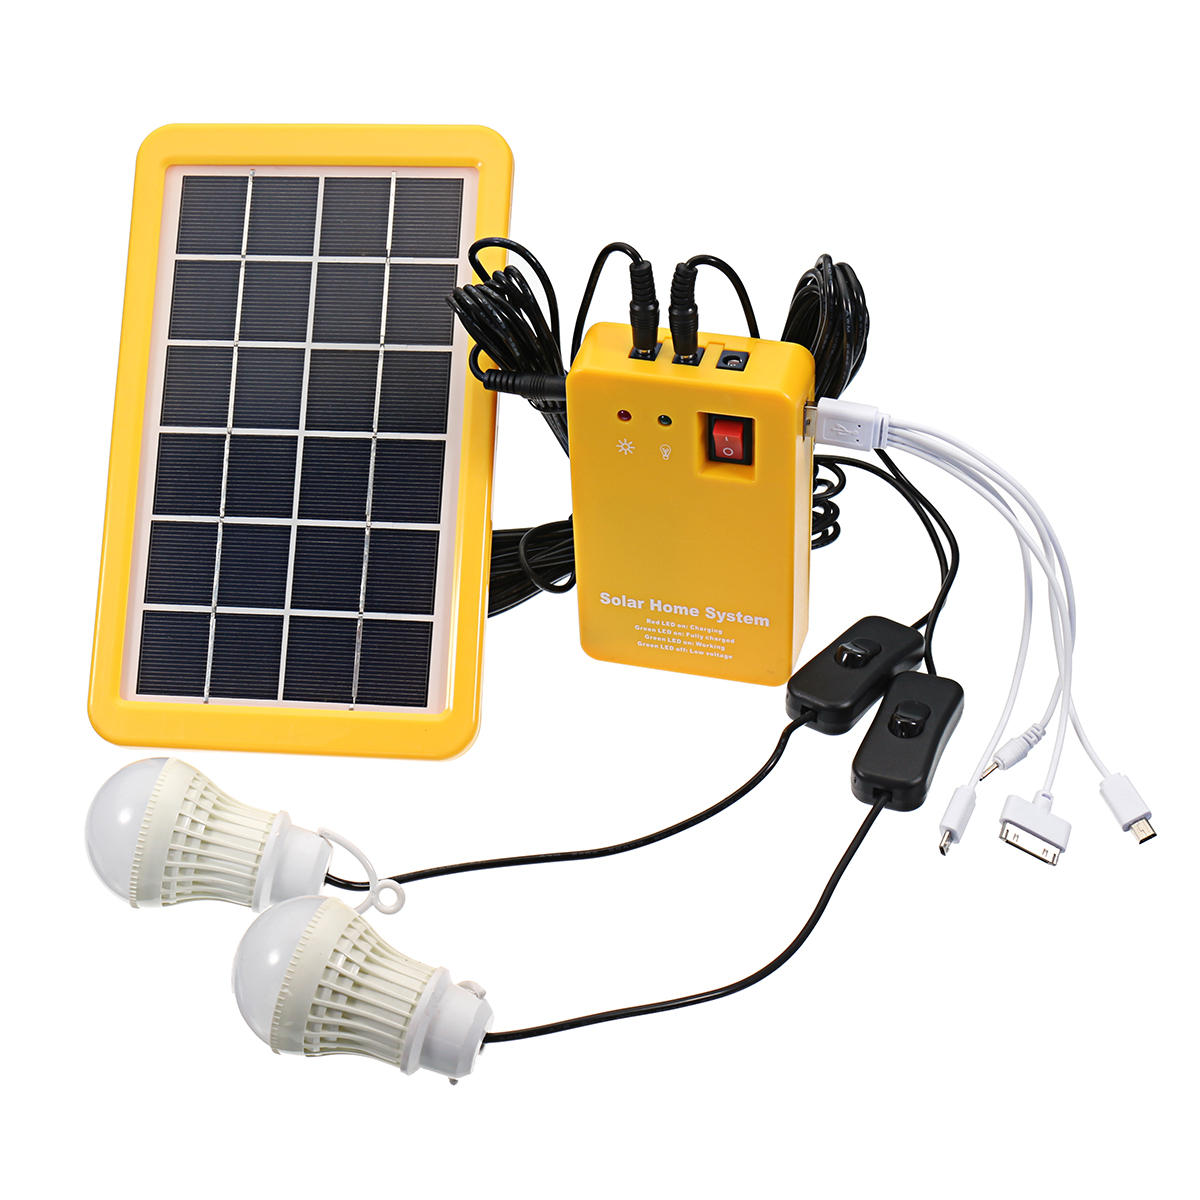 3W تعمل بالطاقة الشمسية نظام لوحة للطاقة الشمسية شحن مولد 5V USB نظام توليد الطاقة مع 2 المصابيح